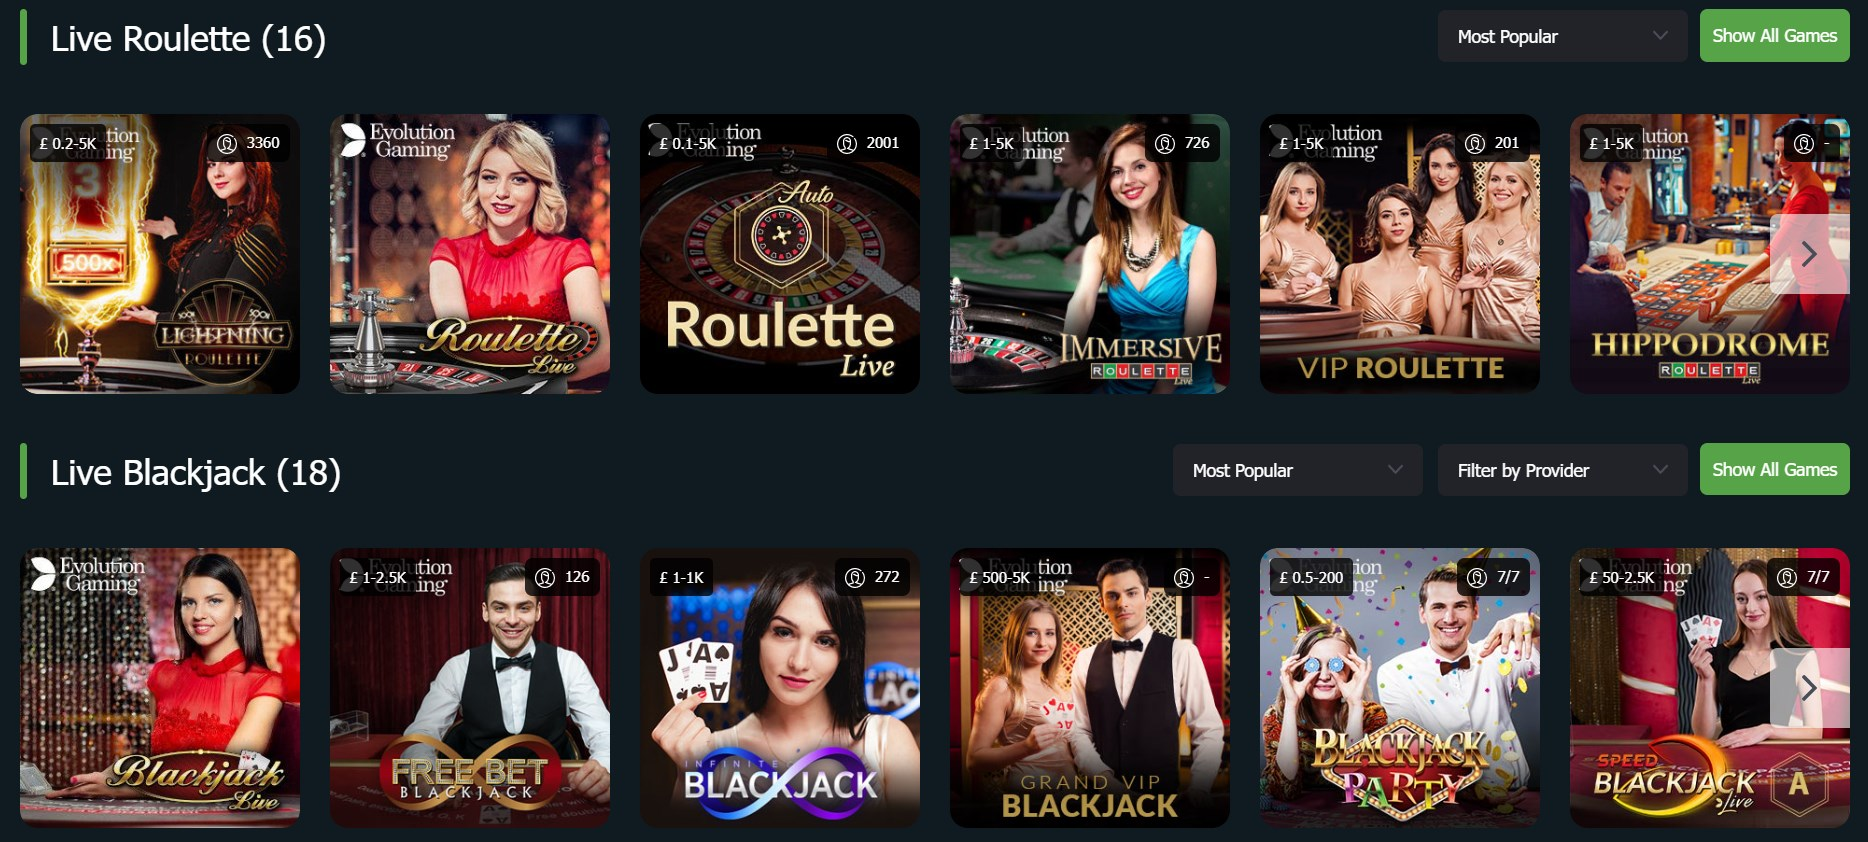 Live roulette and live blackjack games on Fansbet